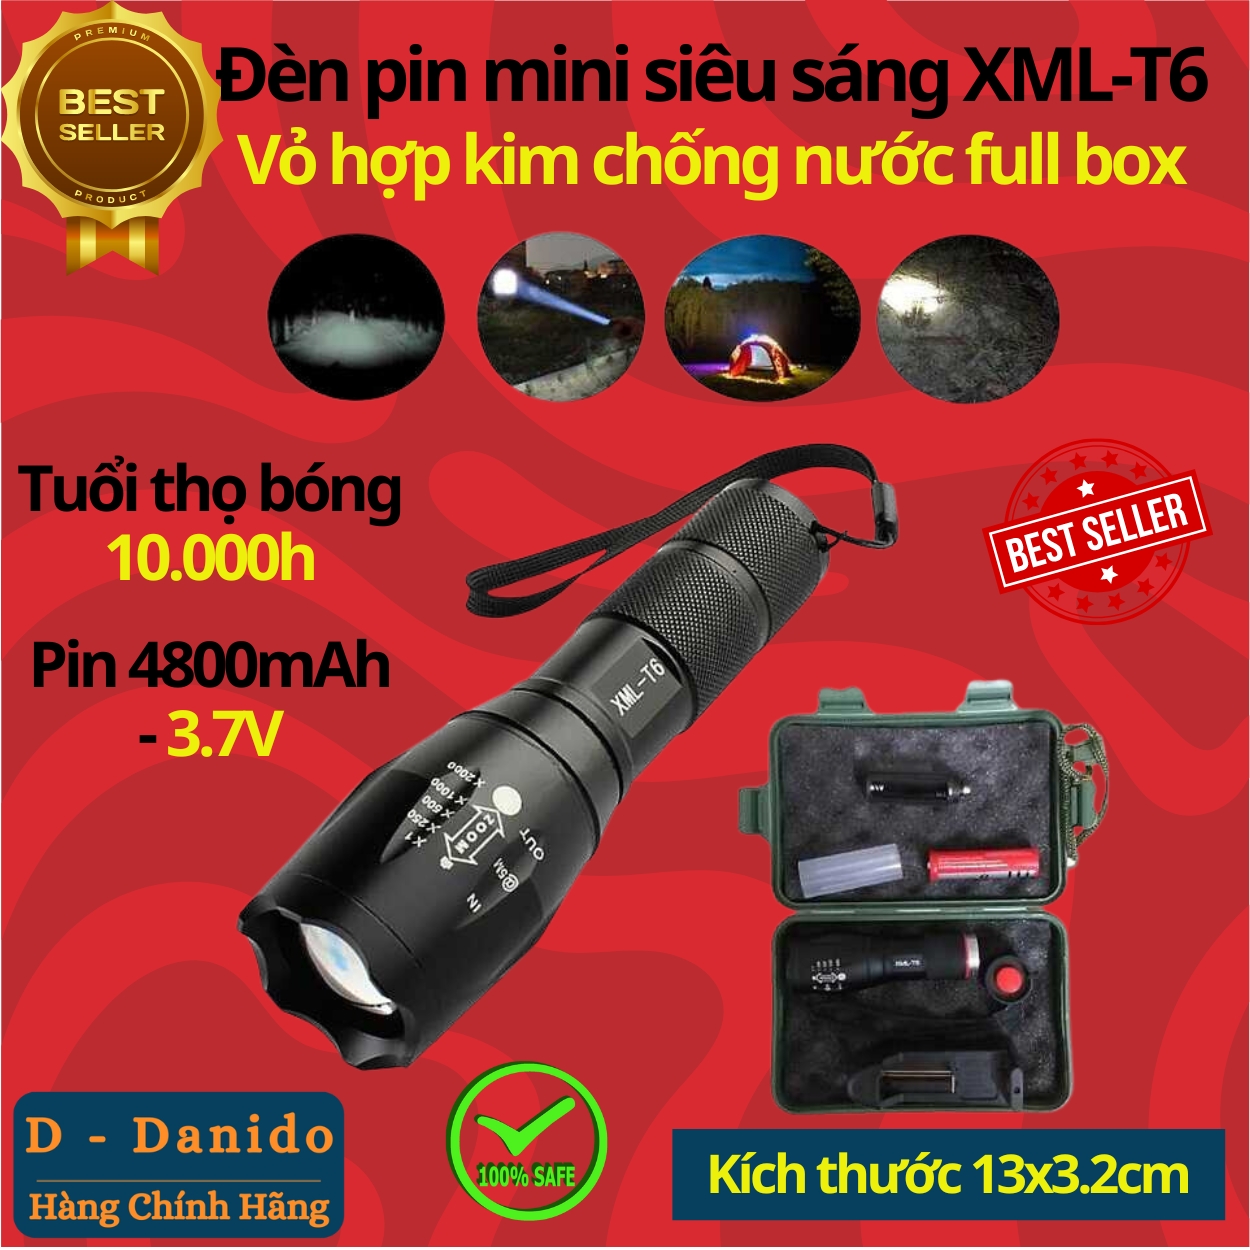 Đèn Pin Mini Siêu Sáng XML-T6 Vỏ Hợp Kim Nhôm Cao Cấp - Chính Hãng D Danido